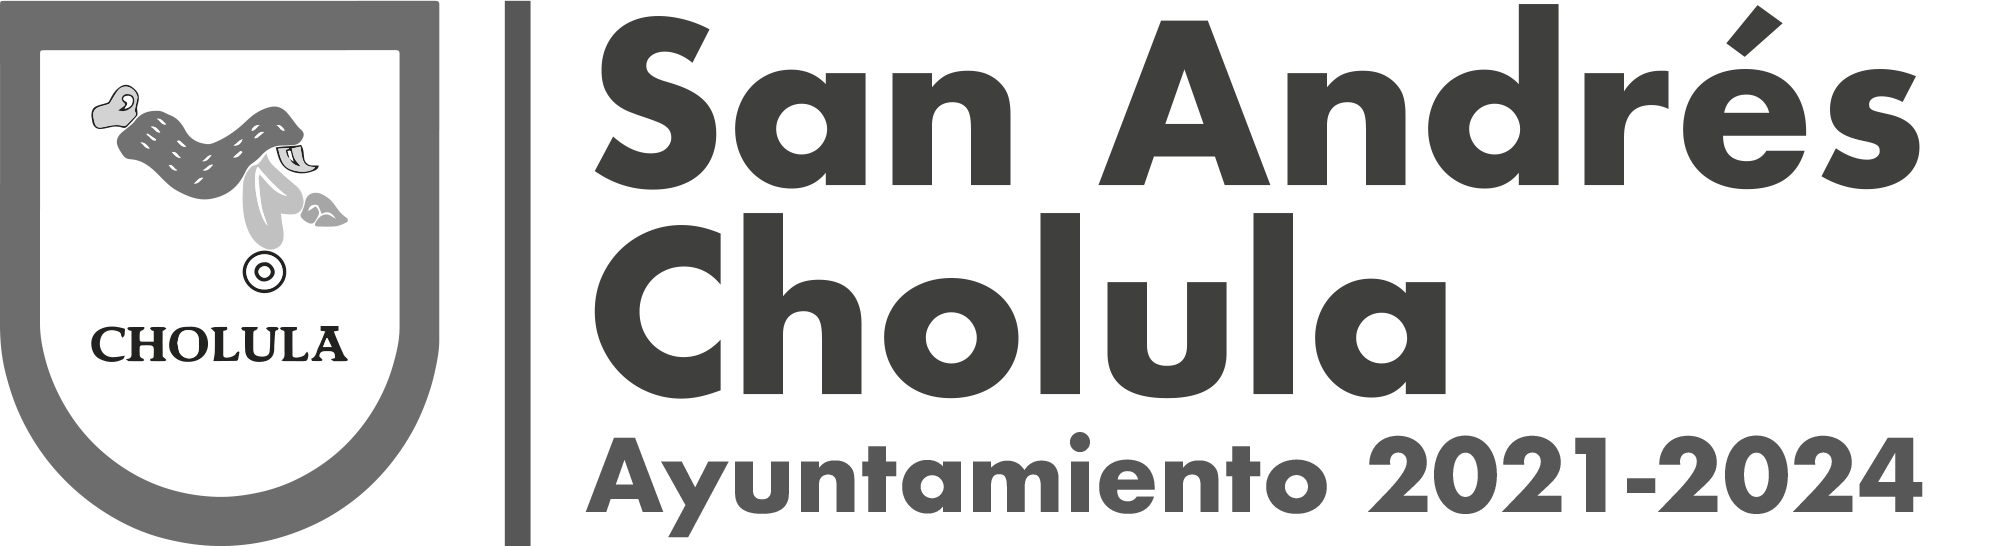 Portal de Transparencia San Andrés Cholula 2021-2024